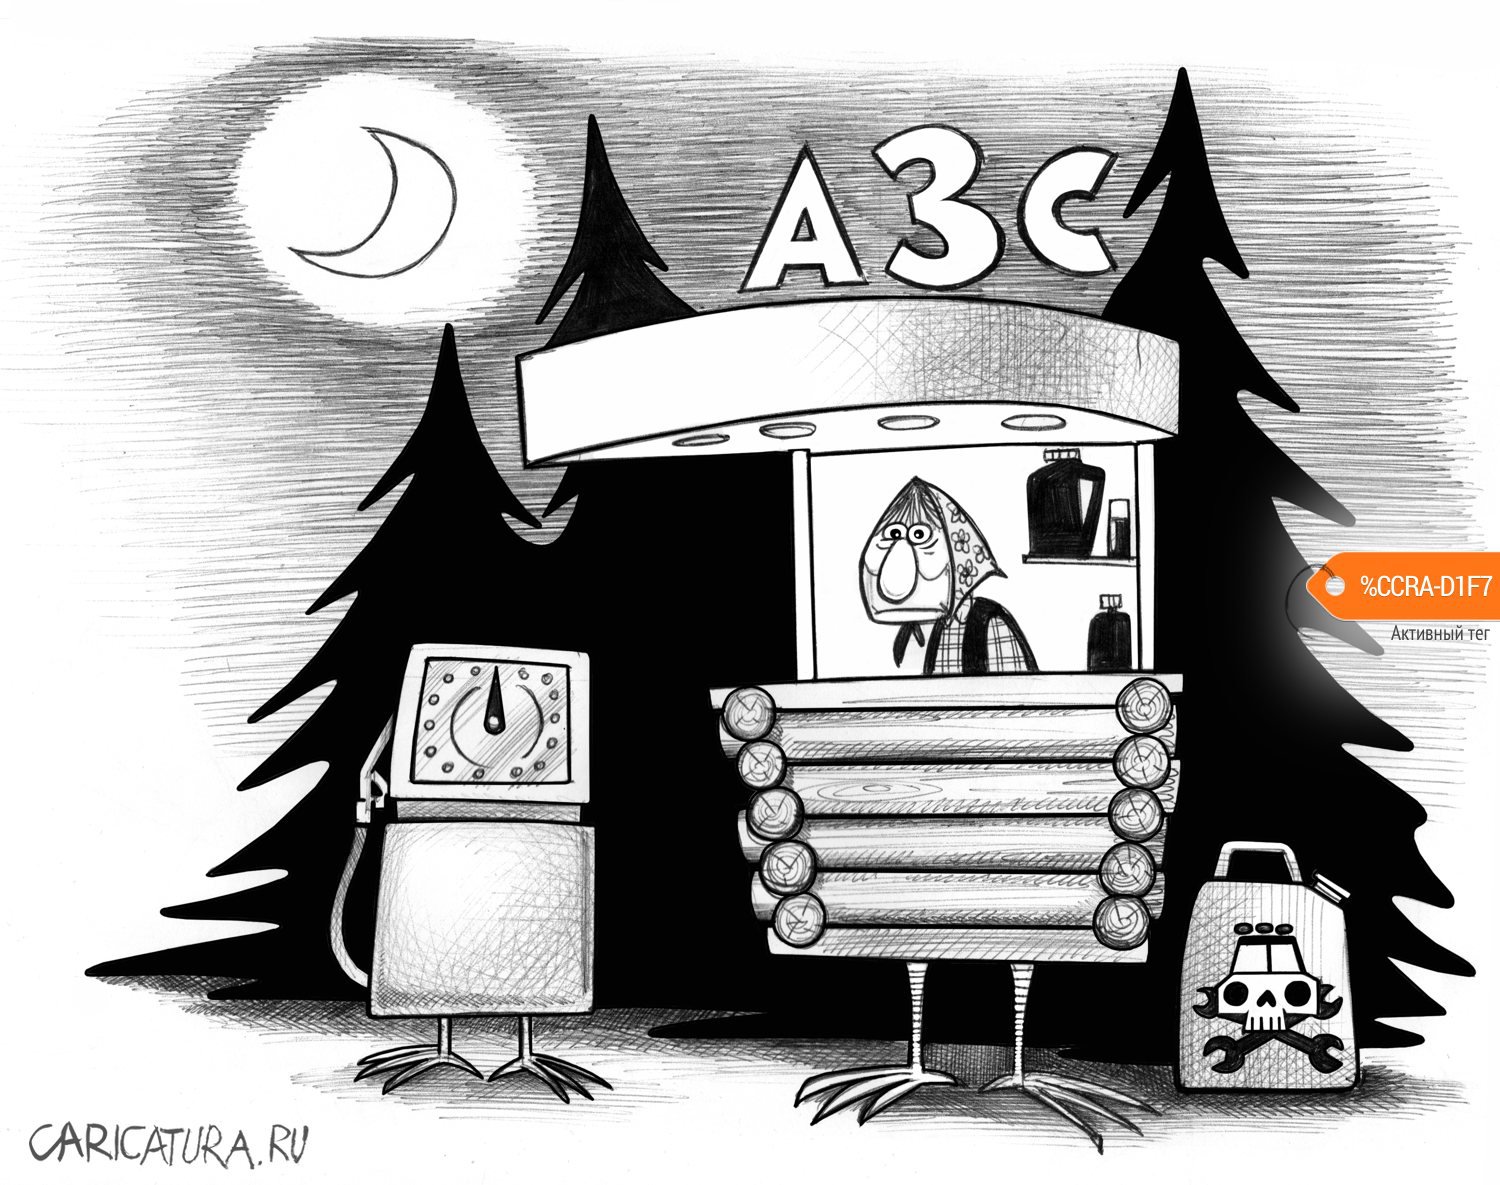 Карикатура "В России вырос объём штрафов за плохой бензин", Сергей Корсун